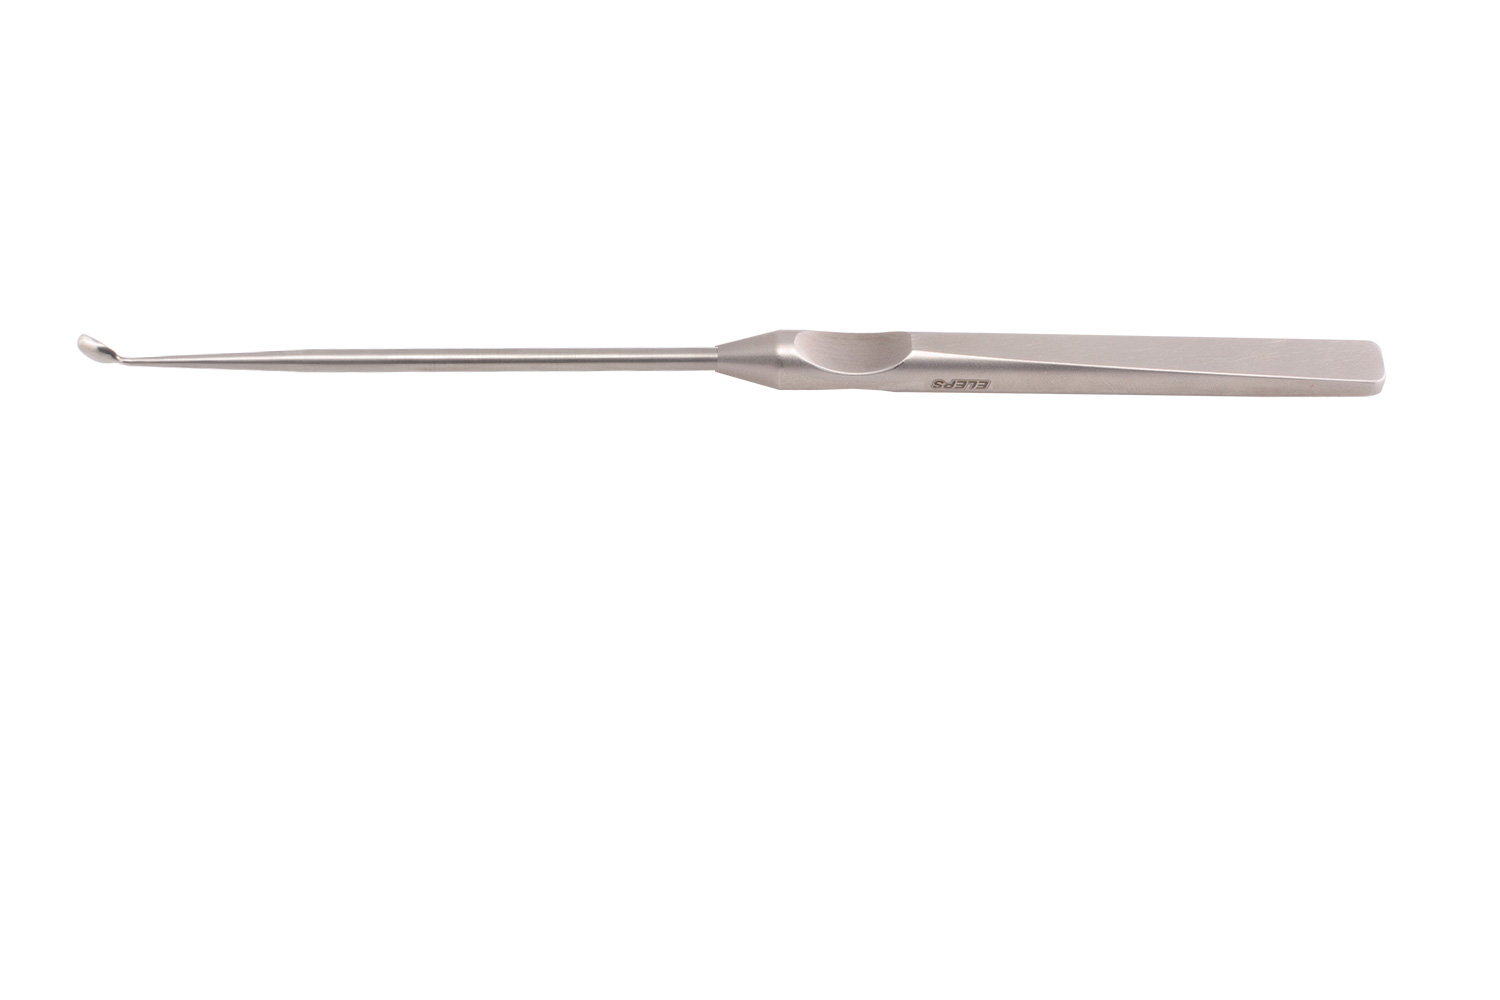 Инструмент для сепарации тканей (кюретка угловая, овальная №1)